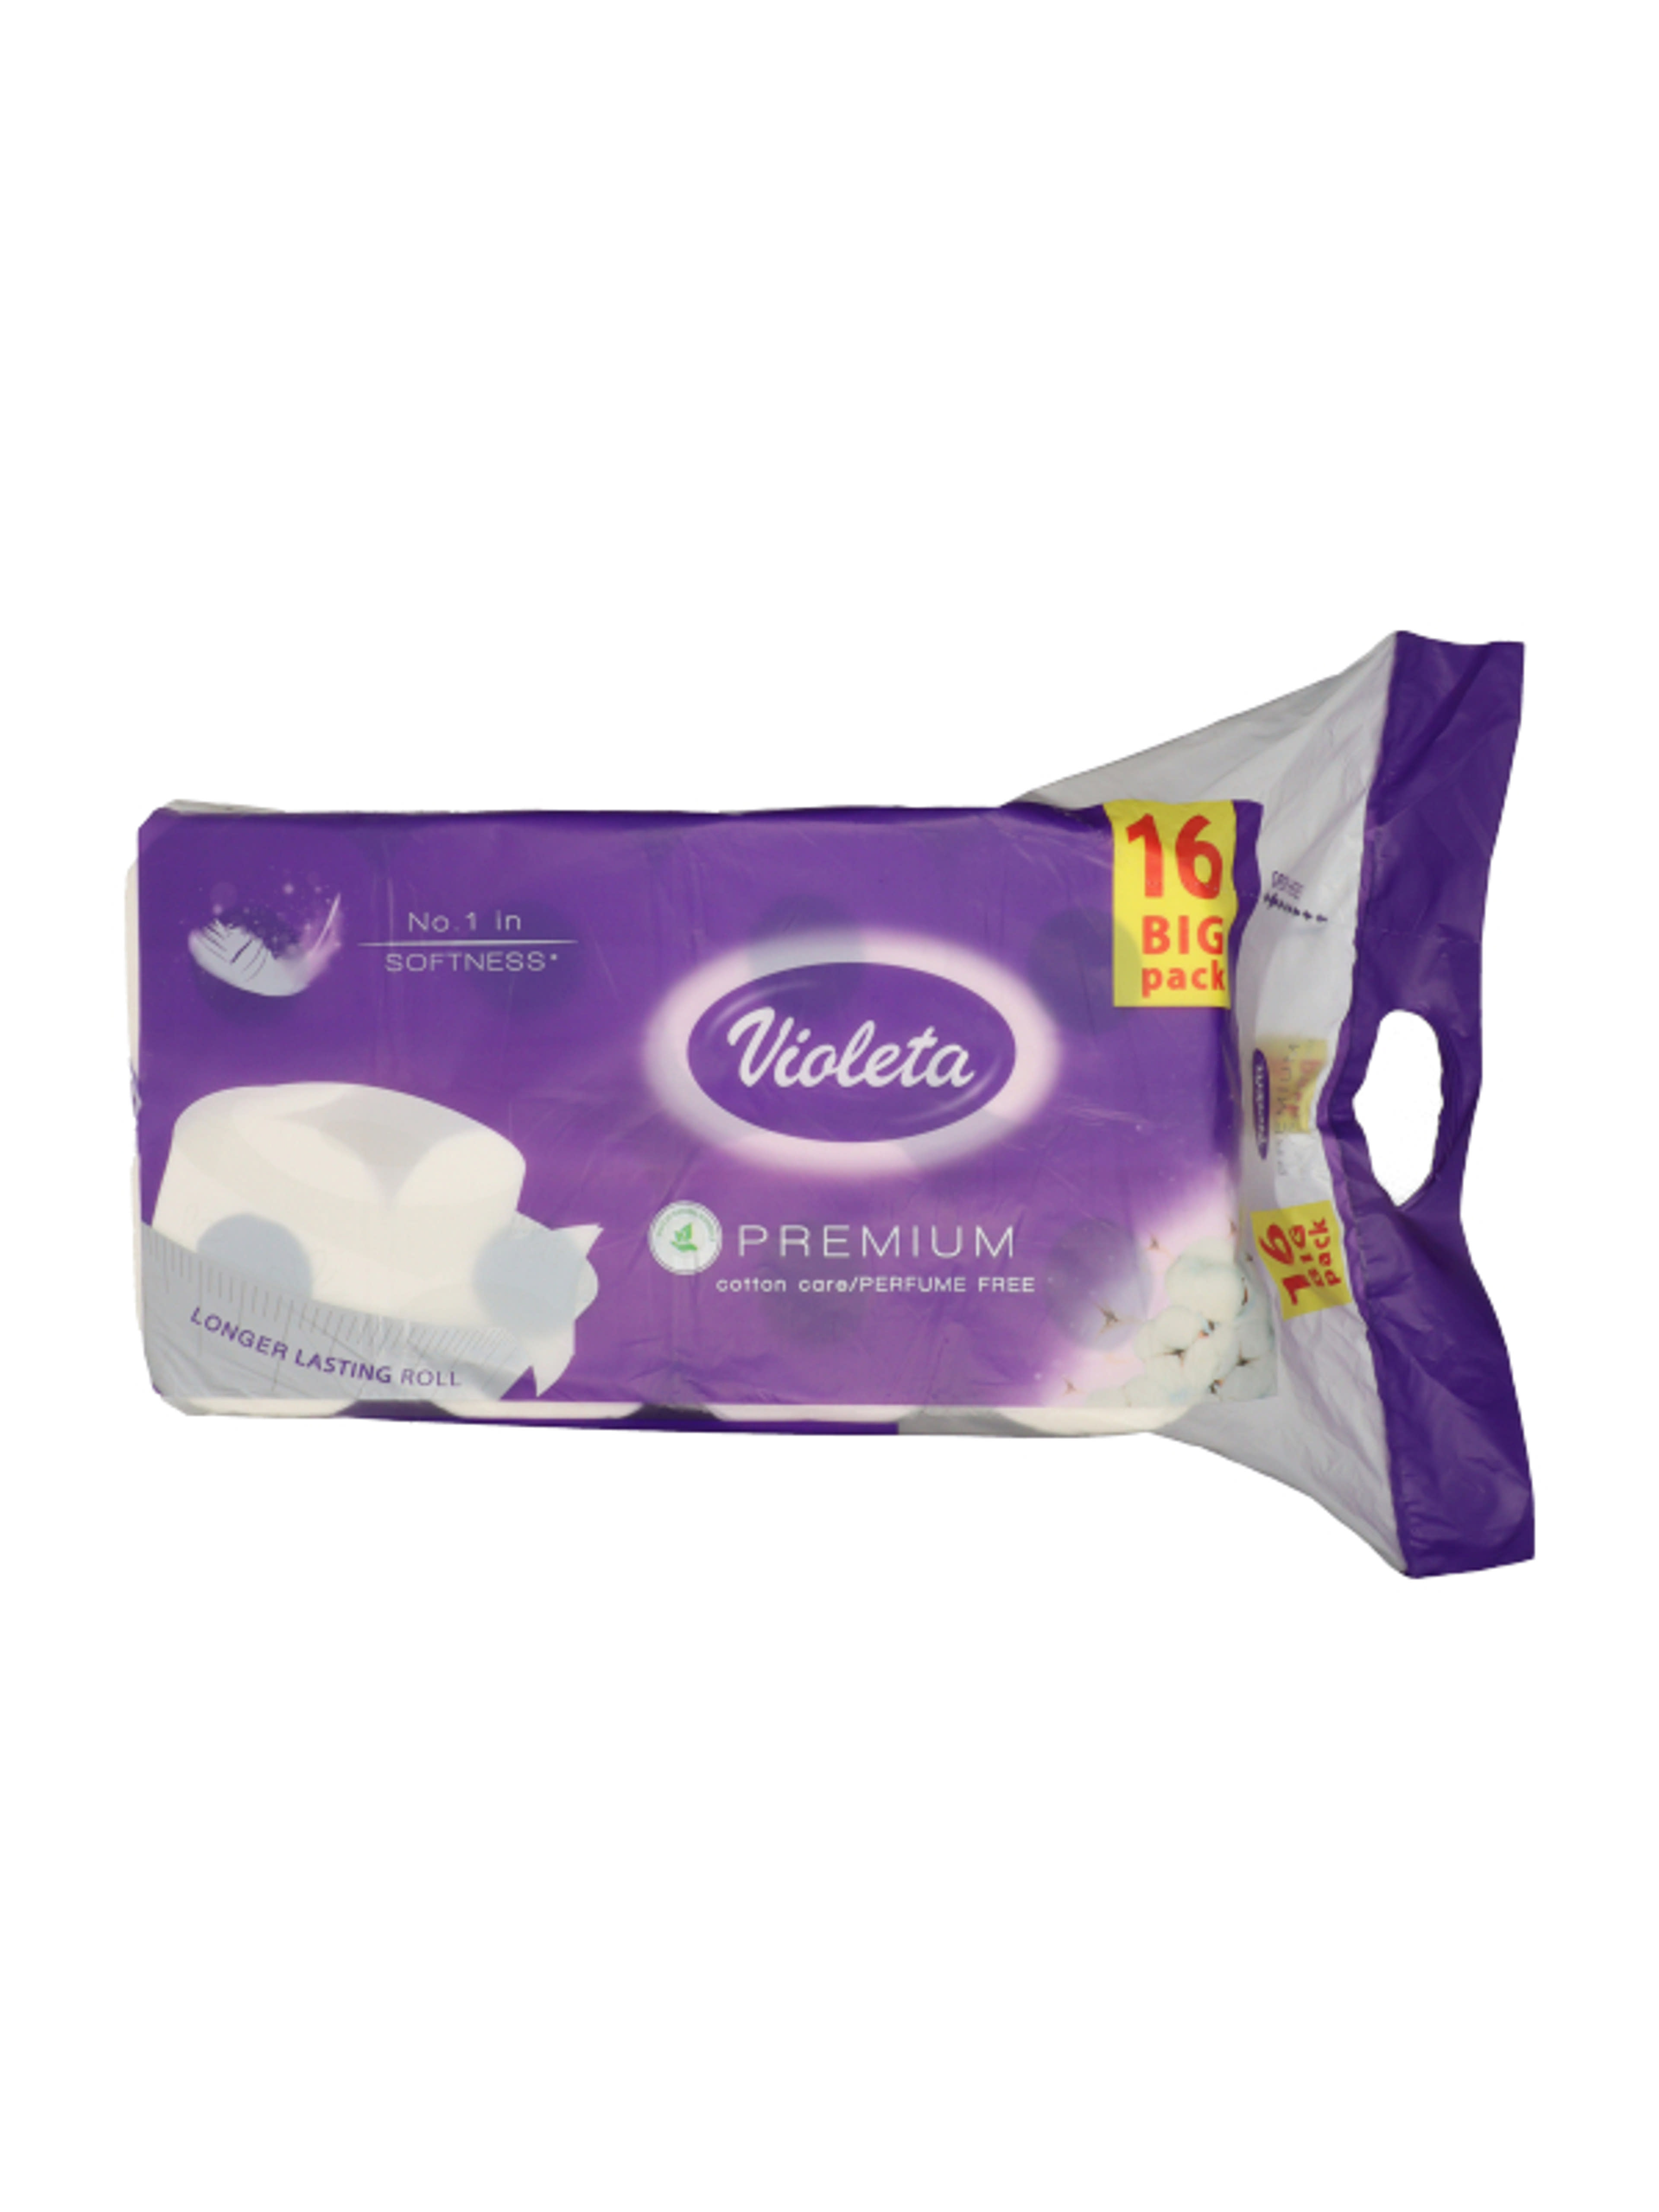 Violetta Prémium toalett papír 3 réteg - 16 db